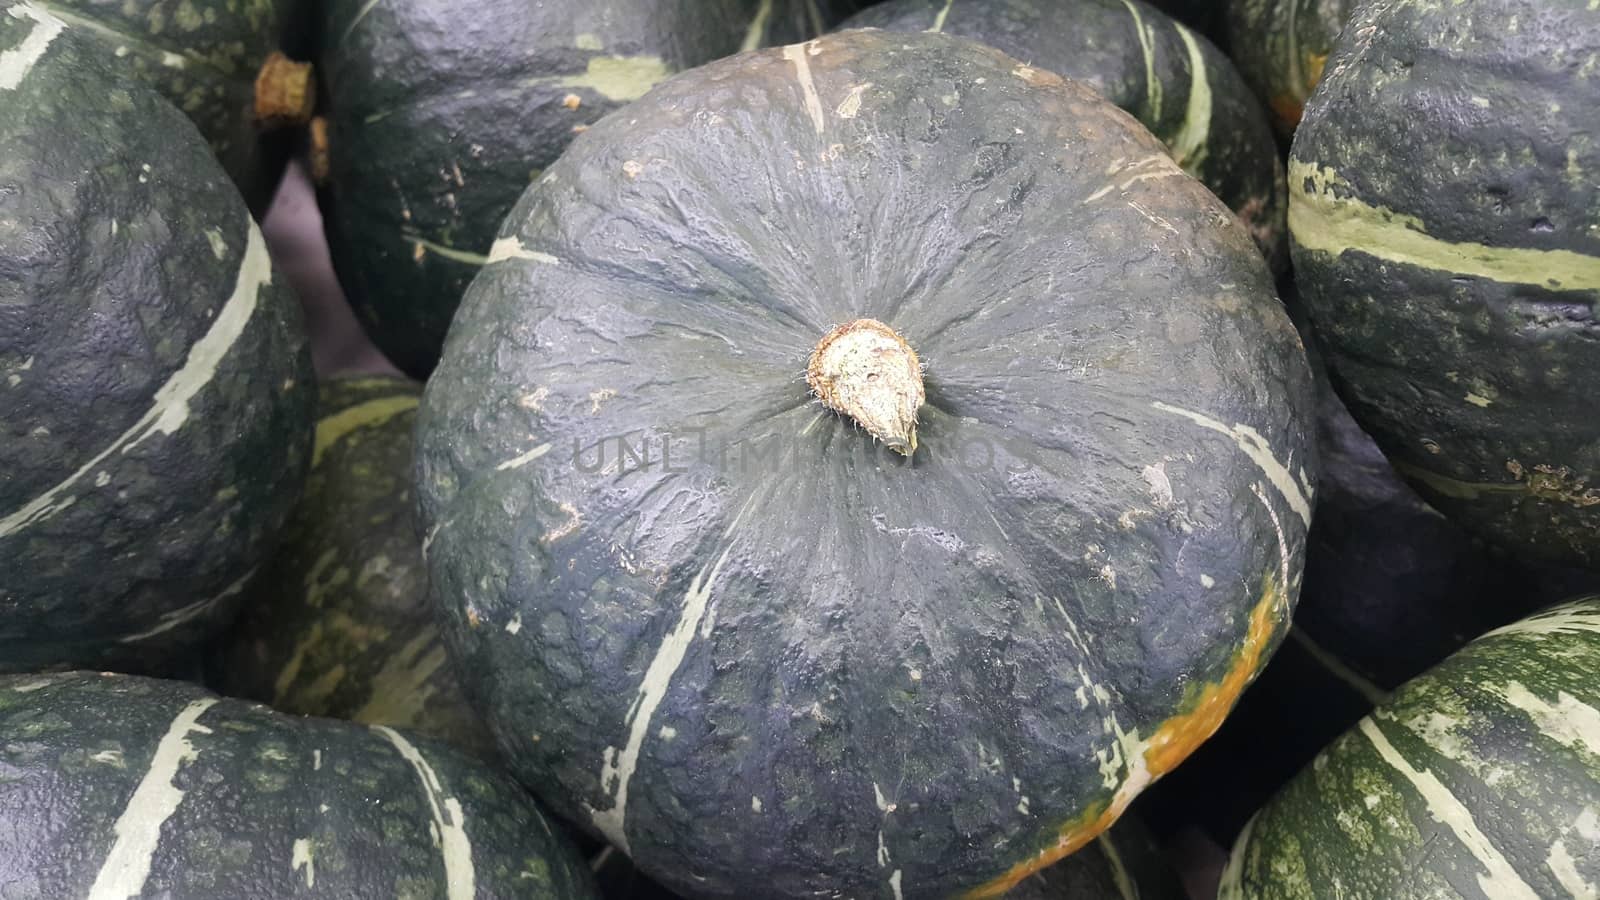 Heap of Green Pumpkin: A close-up view of large, fresh green pumpkins